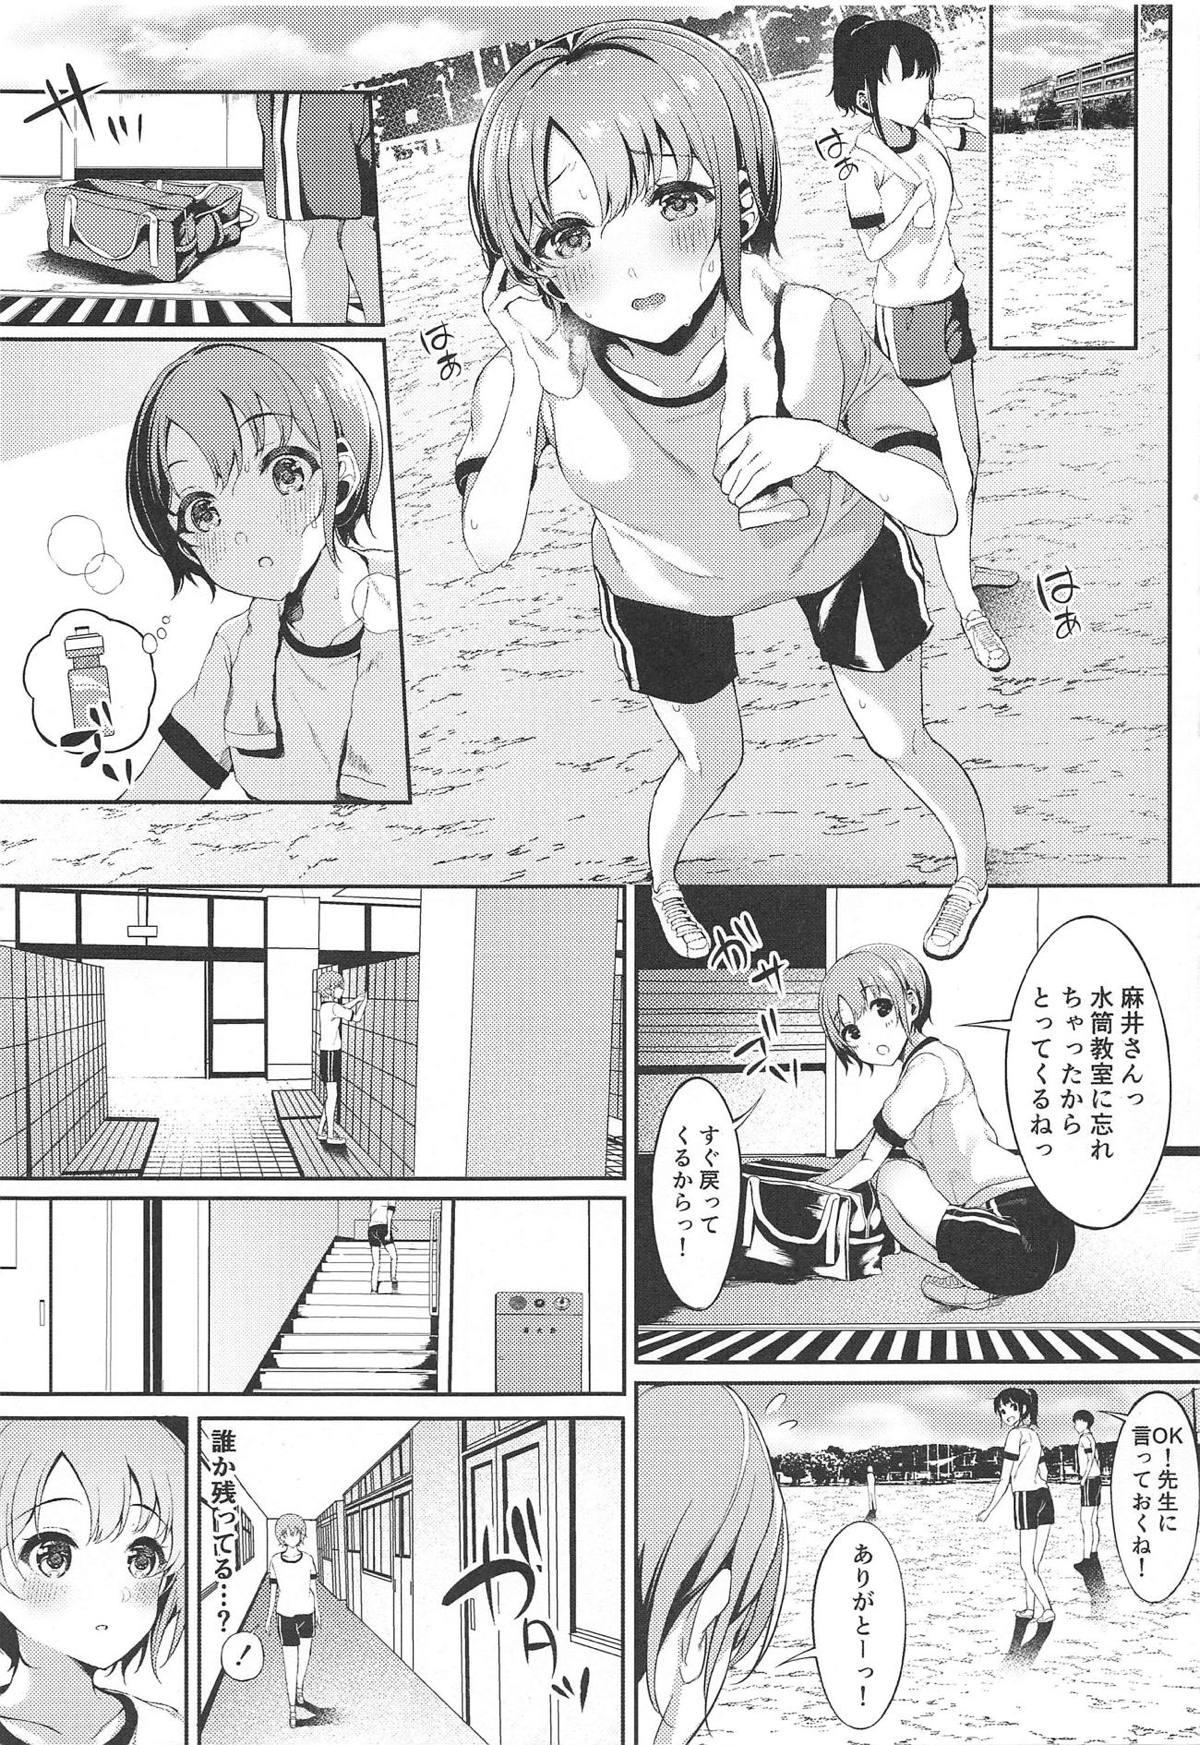 Buceta Akaneiro no Sora ga Yoru ni Somaru made - The idolmaster Hot Pussy - Page 6